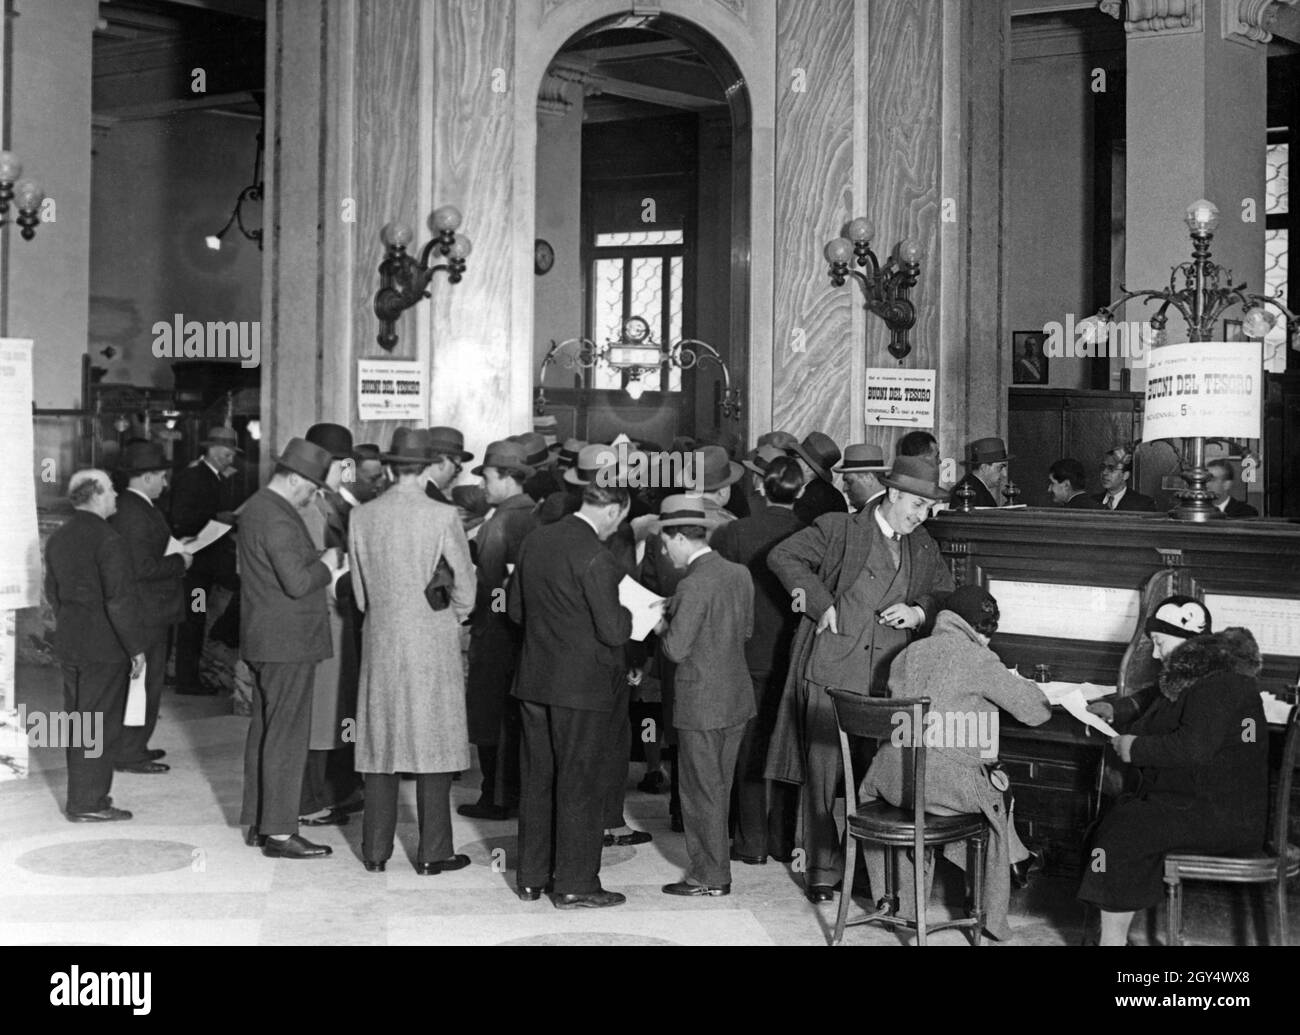 Il 1° aprile 1932, le filiali di banca erano affollate, come qui ai banchi di una banca romana. La gente si iscrive in liste per riservare le banconote del tesoro di nove anni (buoni del tesoro novennali), che sarebbero state emesse in una data successiva. [traduzione automatizzata] Foto Stock